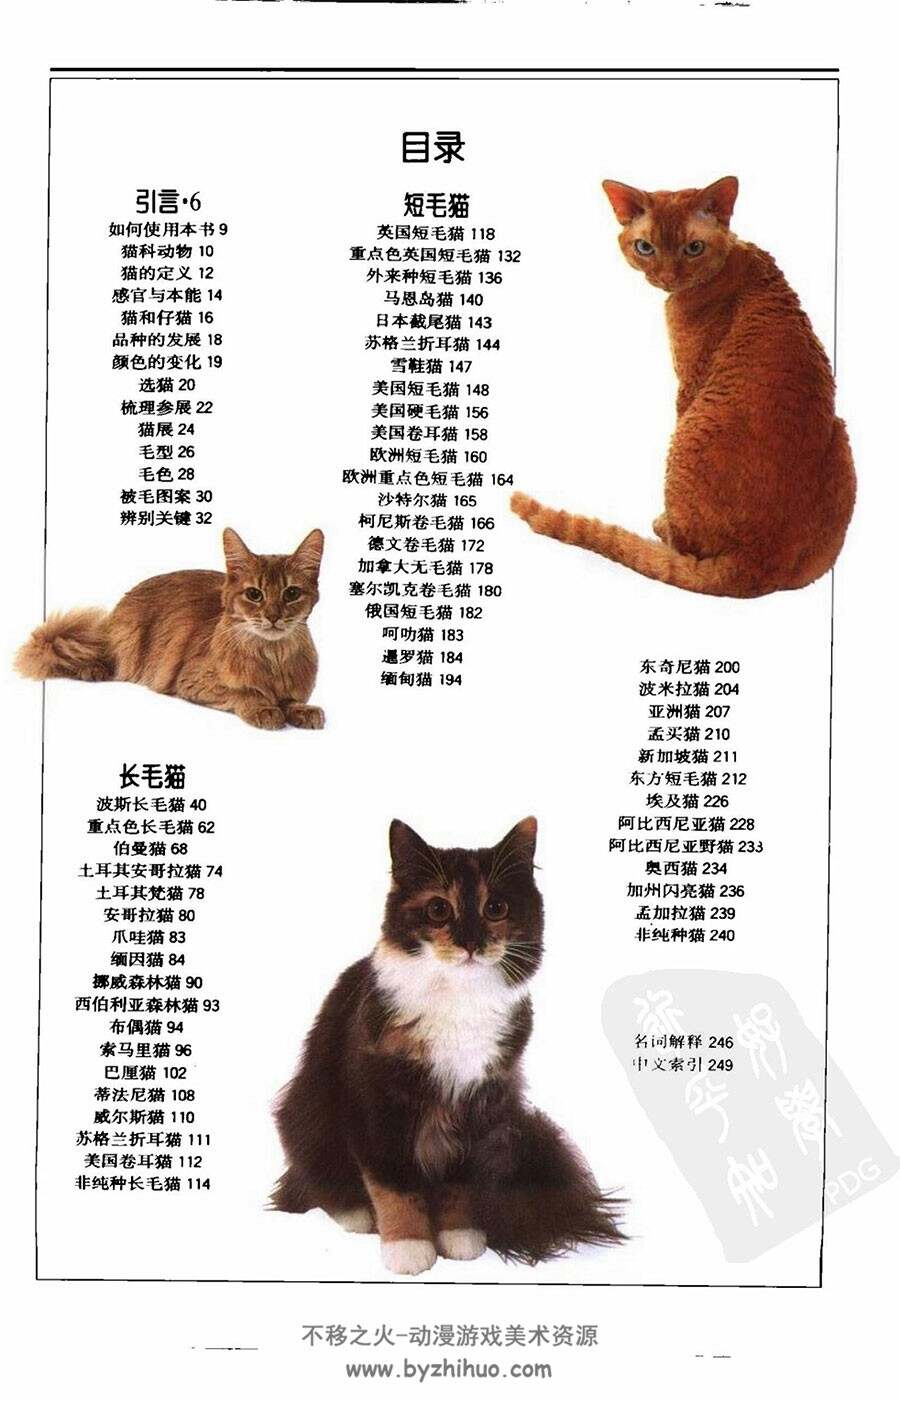 猫 世界各地250多种猫的彩色图鉴 猫咪素材资料图解书籍百度网盘下载